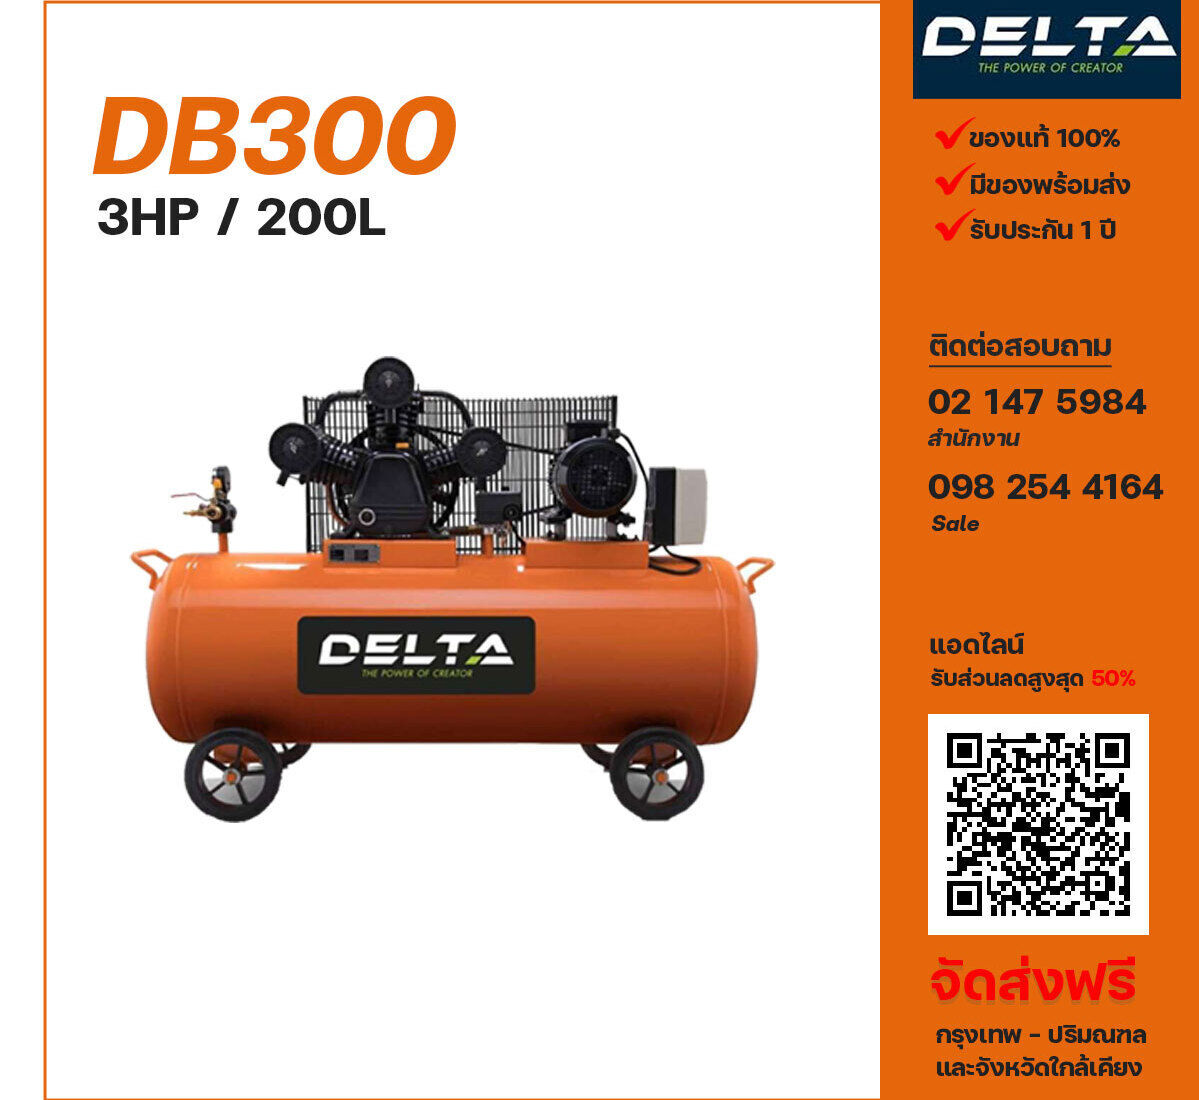 ปั๊มลมเดลต้า DELTA DB300 380V ปั๊มลมลูกสูบ ขนาด 3 สูบ 3 แรงม้า 200 ลิตร DELTA พร้อมมอเตอร์ ไฟ 380V ส่งฟรี กรุงเทพฯ-ปริมณฑล รับประกัน 1 ปี